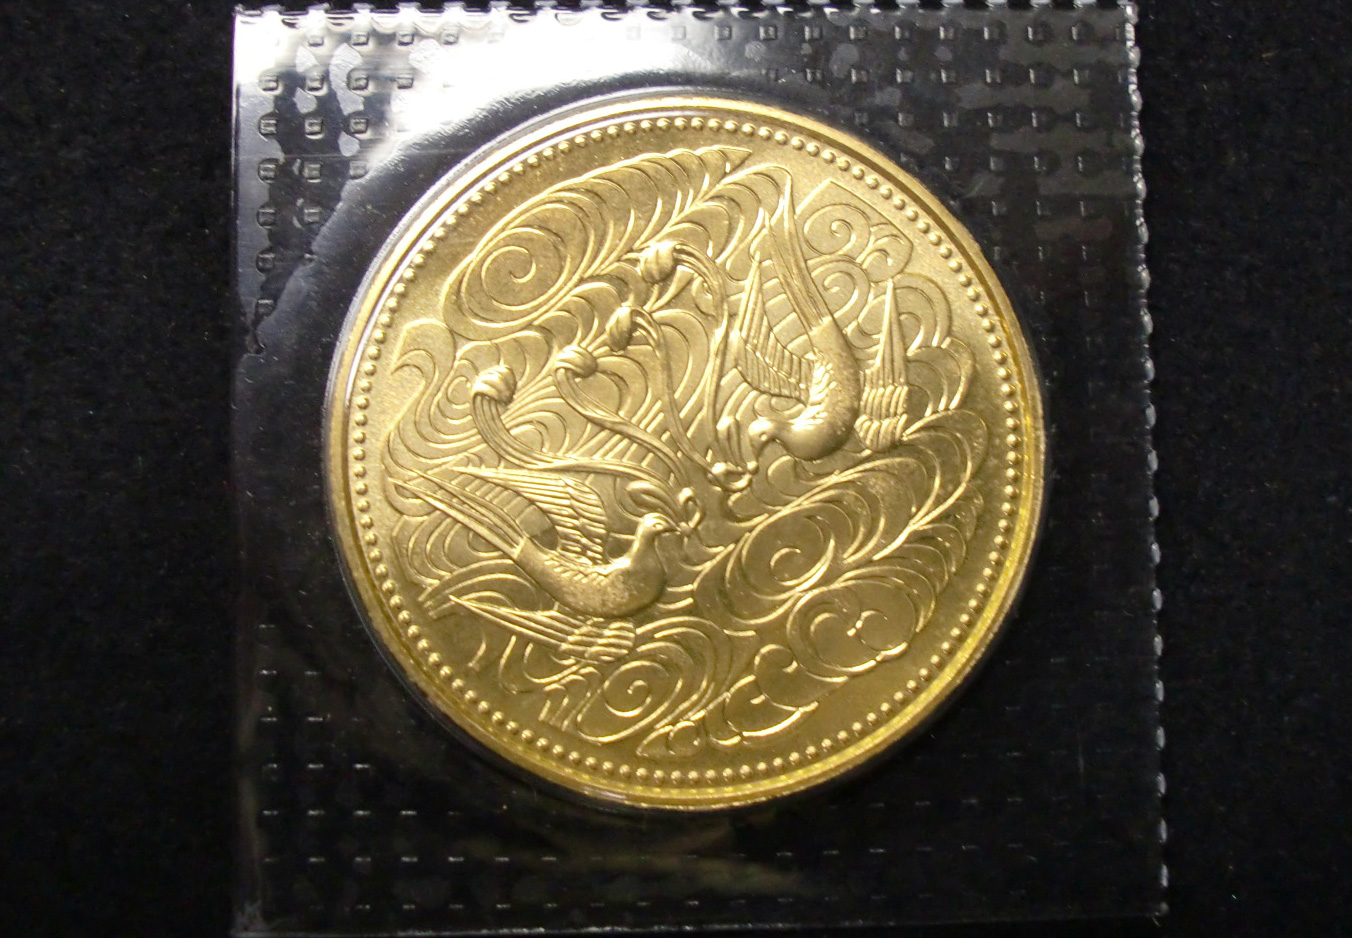 天皇陛下 御在位60年記念 10万円金貨 ブリスターパック 記念硬貨 昭和 